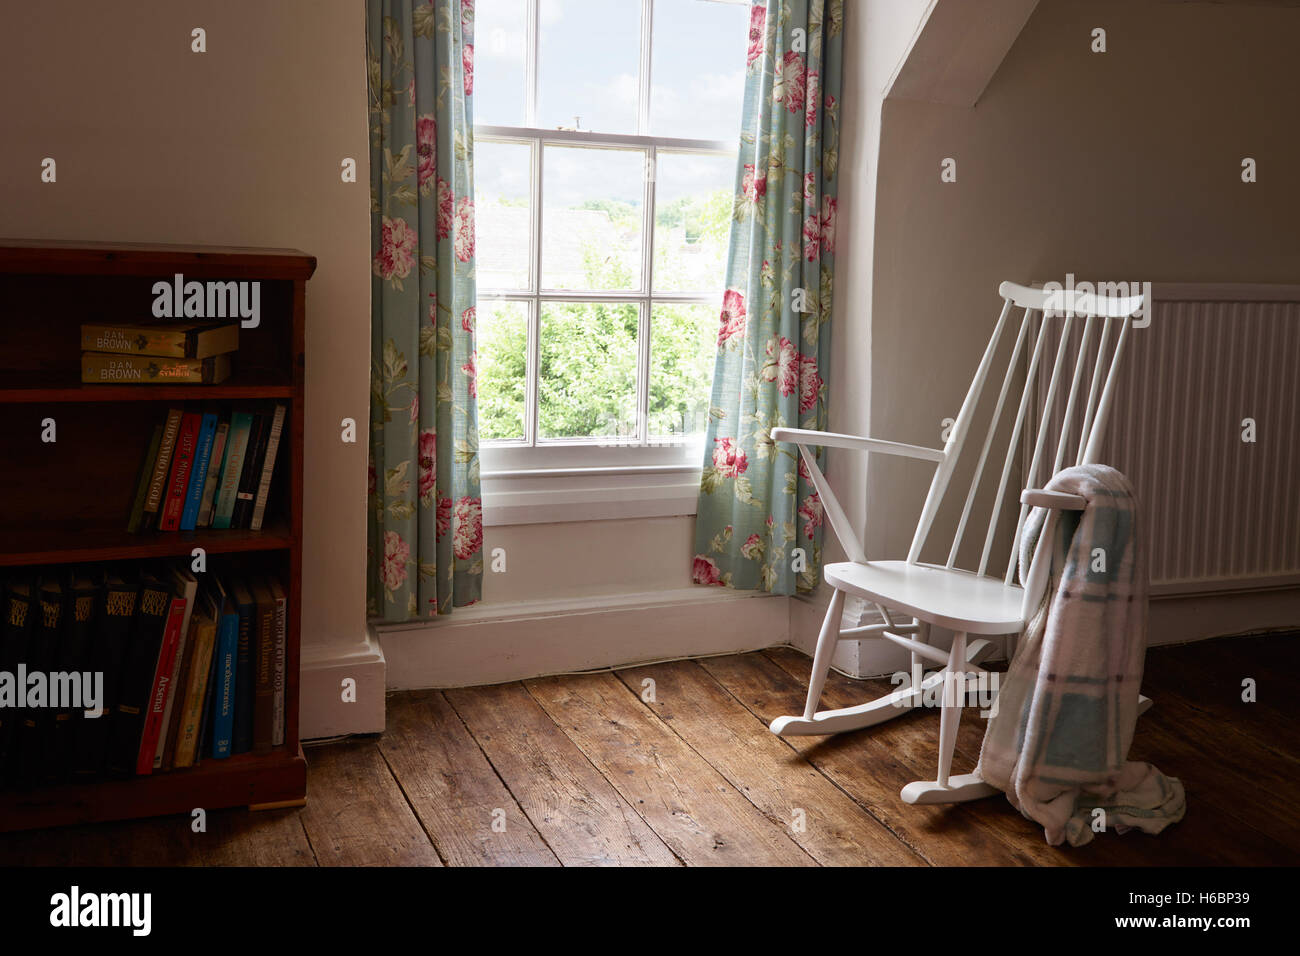 Einem weißen, leeren Schaukelstuhl auf ein Massivholzboden durch ein Fenster in einem Raum mit einem Wurf über den Arm. Stockfoto